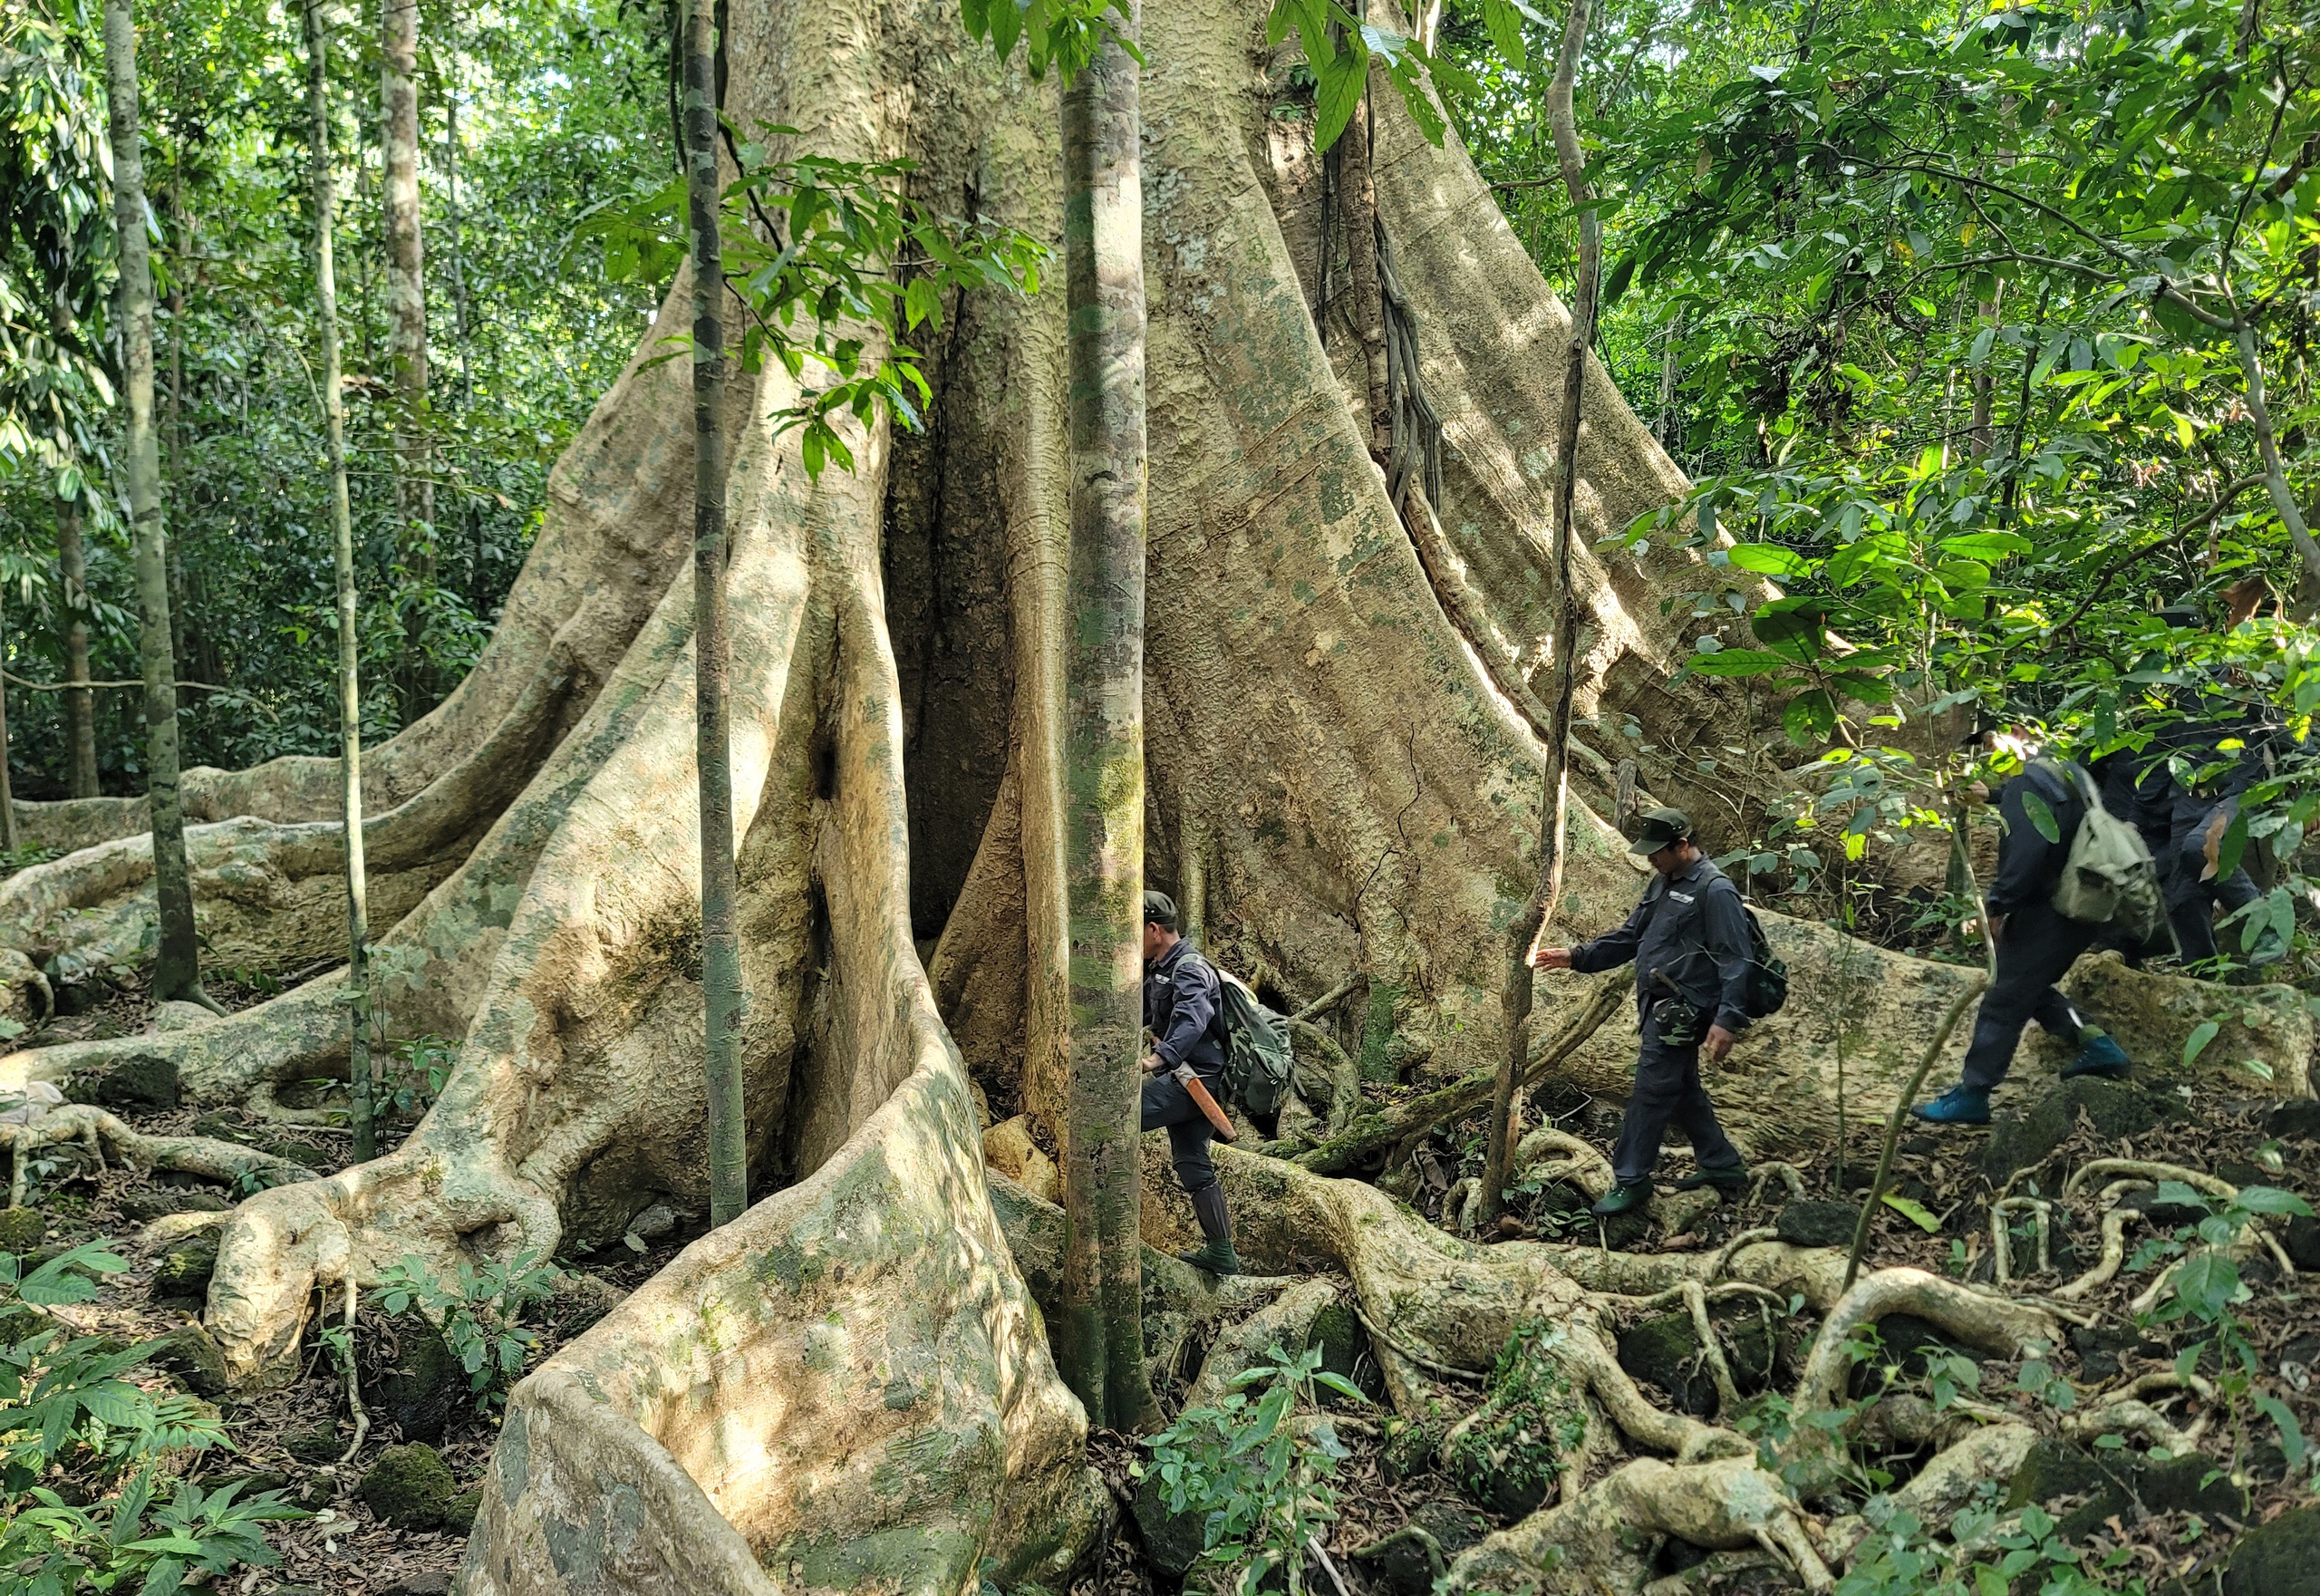 Một cây cổ thụ kỳ mỹ gần 500 tuổi tại khu rừng giáp ranh Lâm Đồng, Bình Phước, Đồng Nai ví như "thằn lằn sấm"- Ảnh 3.